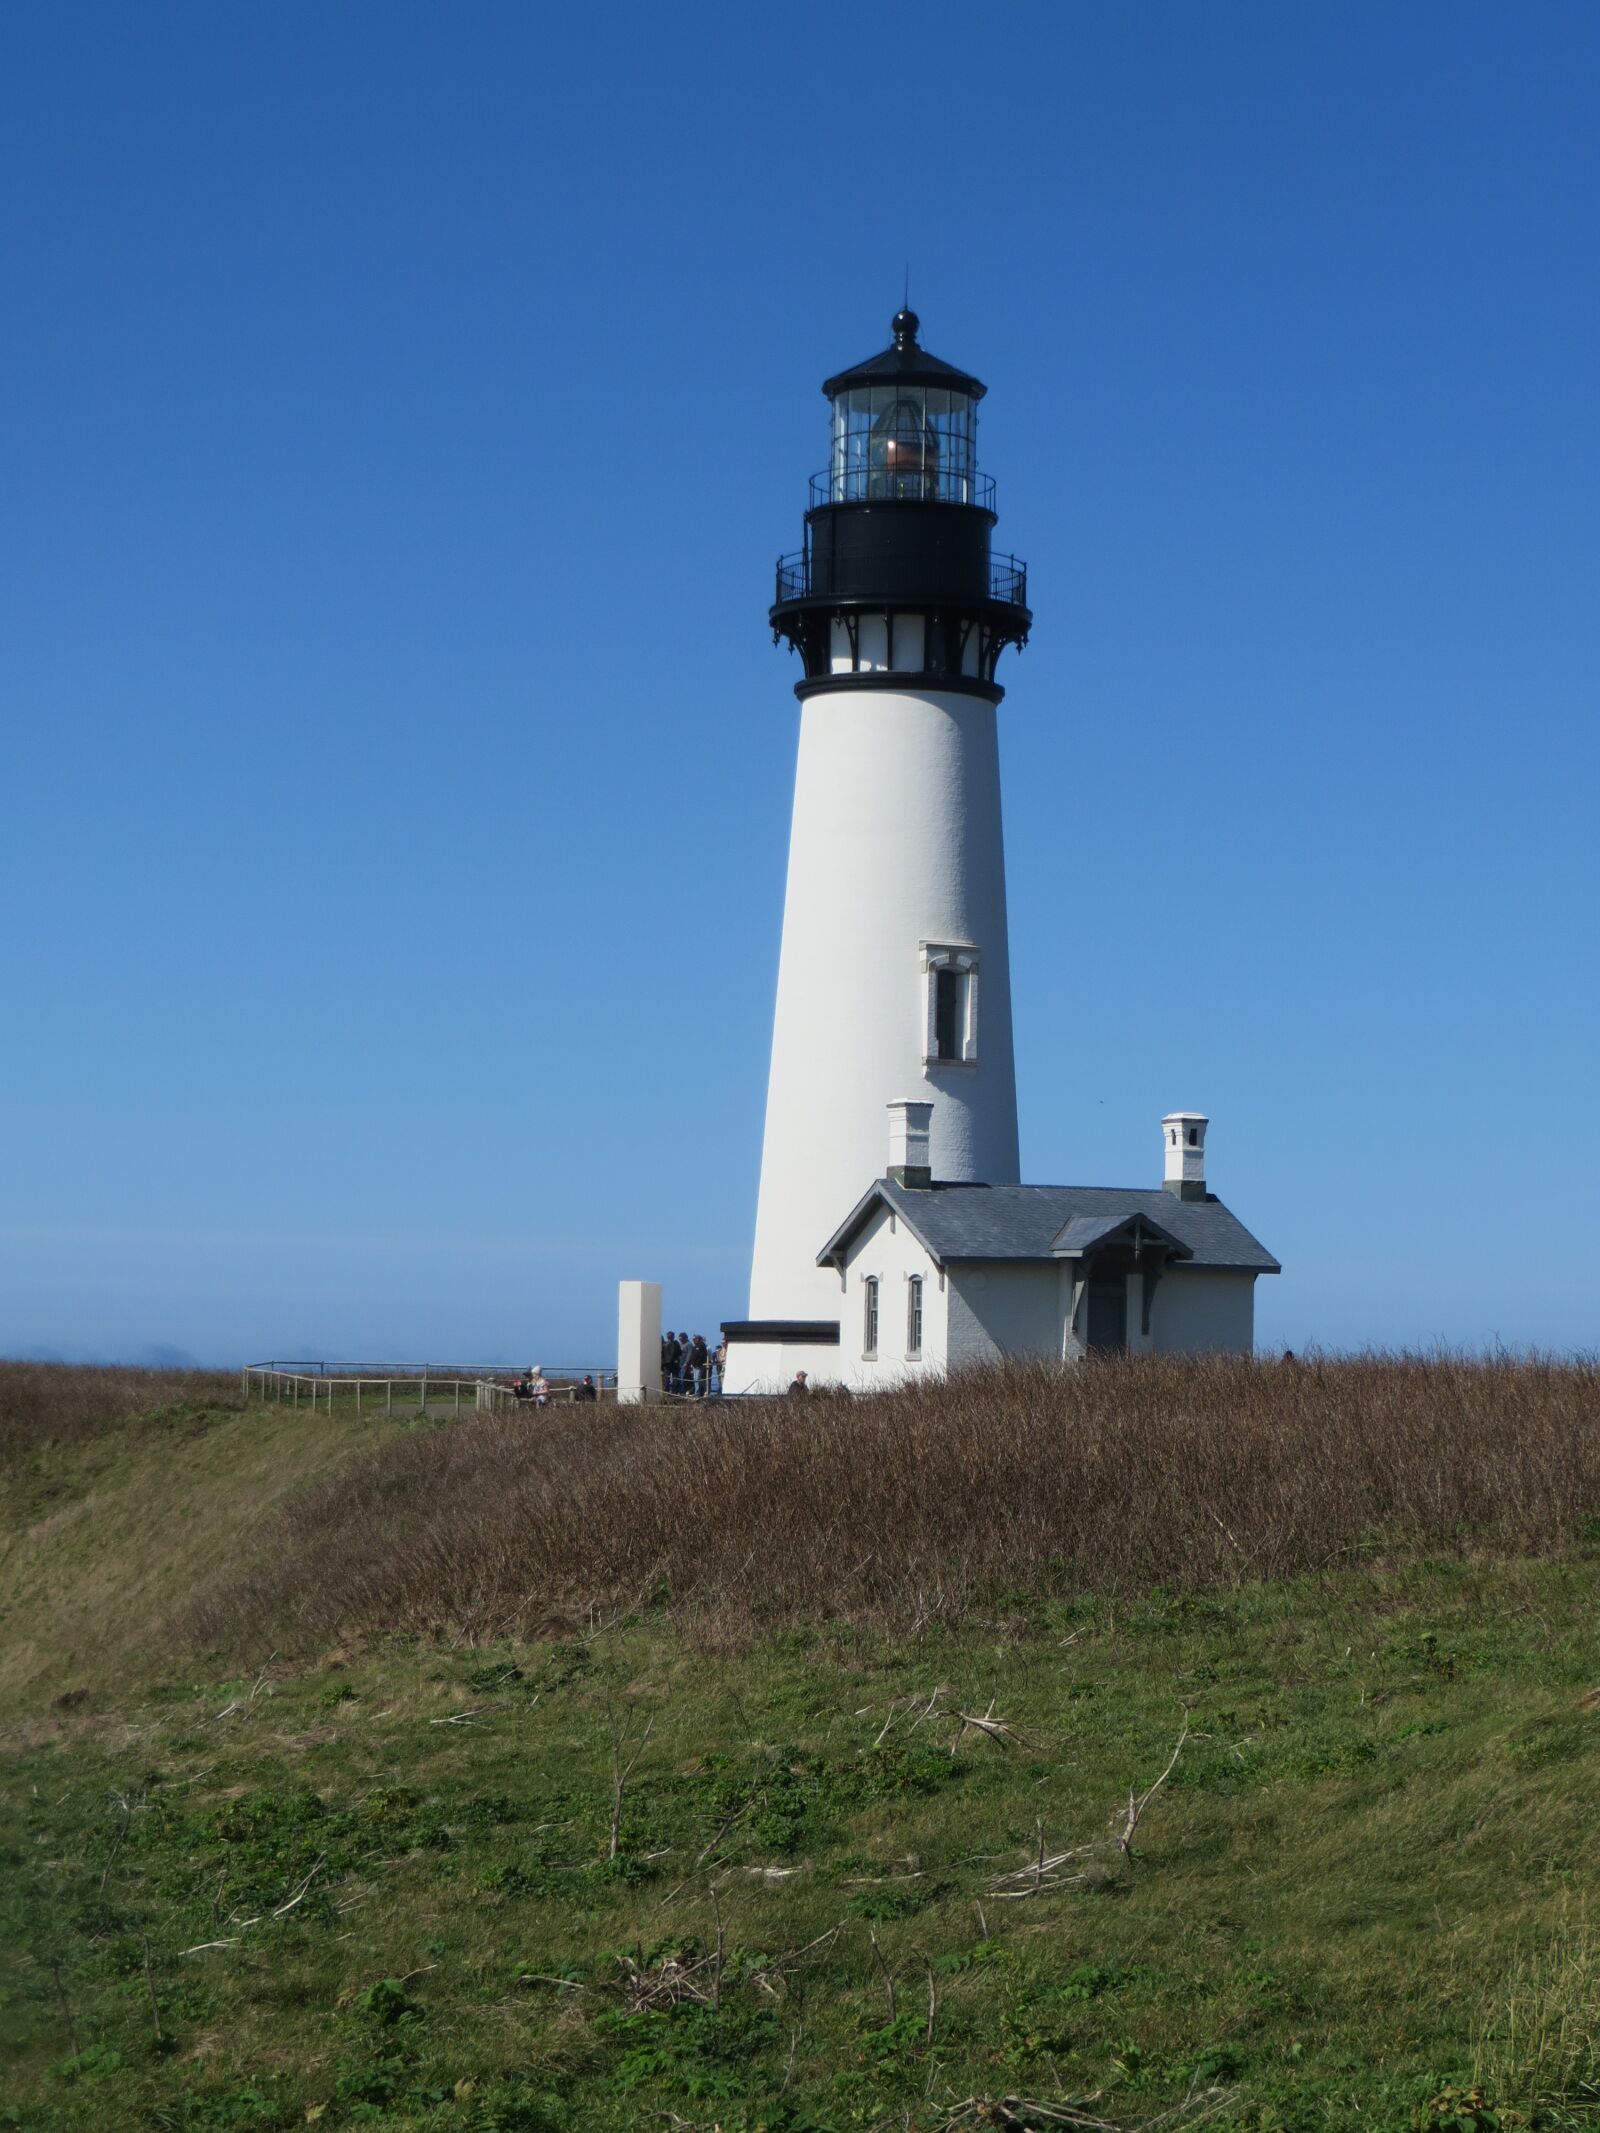 Canon PowerShot SX280 HS sample photo. Lighthouse, oregon, coast photography